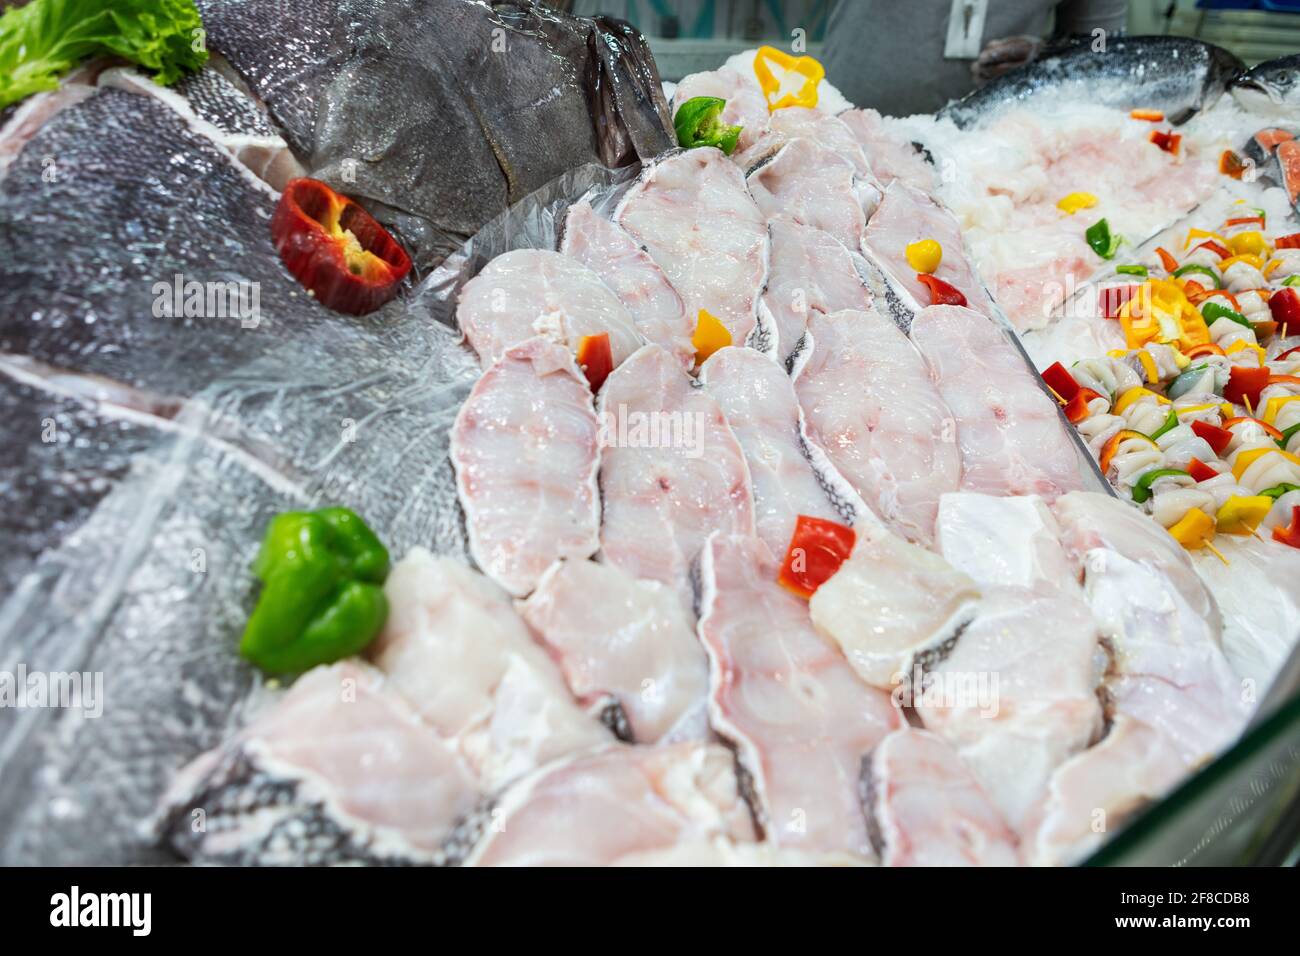 Ripiano fishmonger in supermercato con pesce fresco. Foto Stock